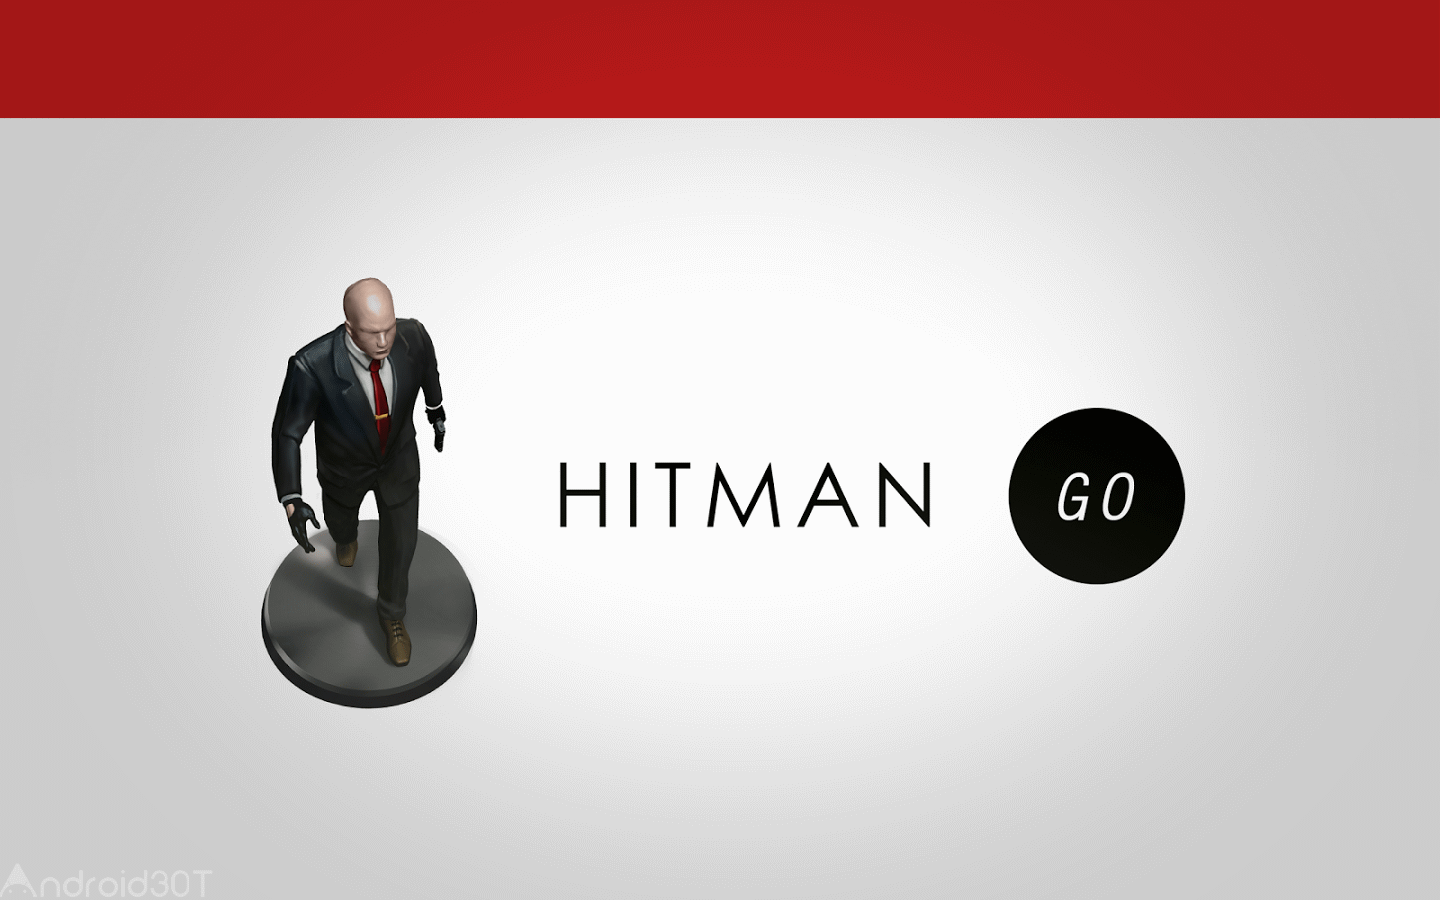 دانلود Hitman GO 1.13.276620 – بازی فکری و پازلی هیتمن اندروید